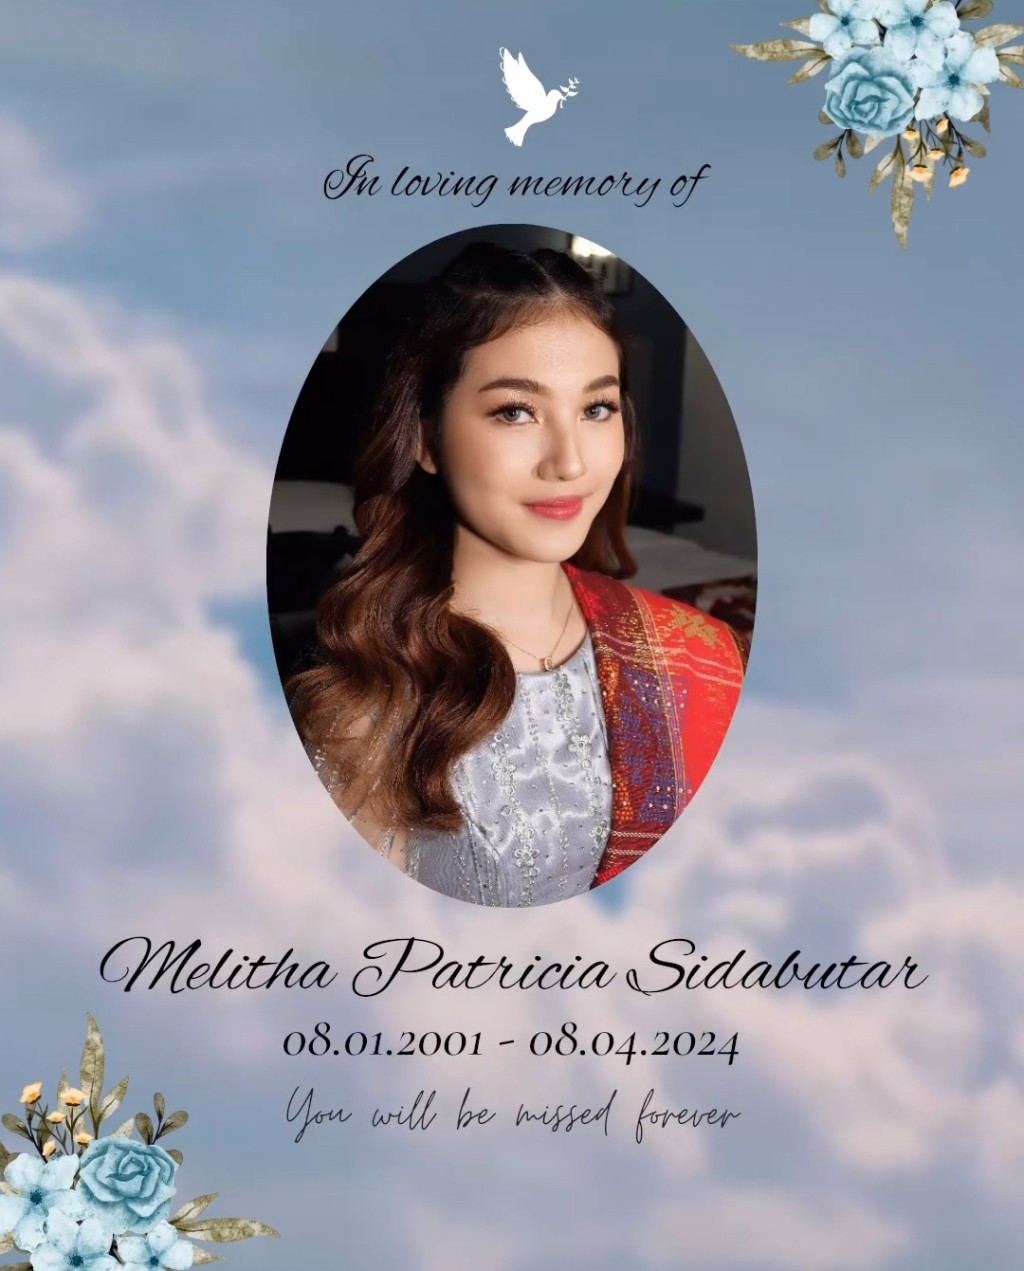 其唱片公司今日發文宣布Melitha Sidabutar離世消息，並寫上：「永別了Melitha，與我們的主耶穌在榮耀的天堂相見」。